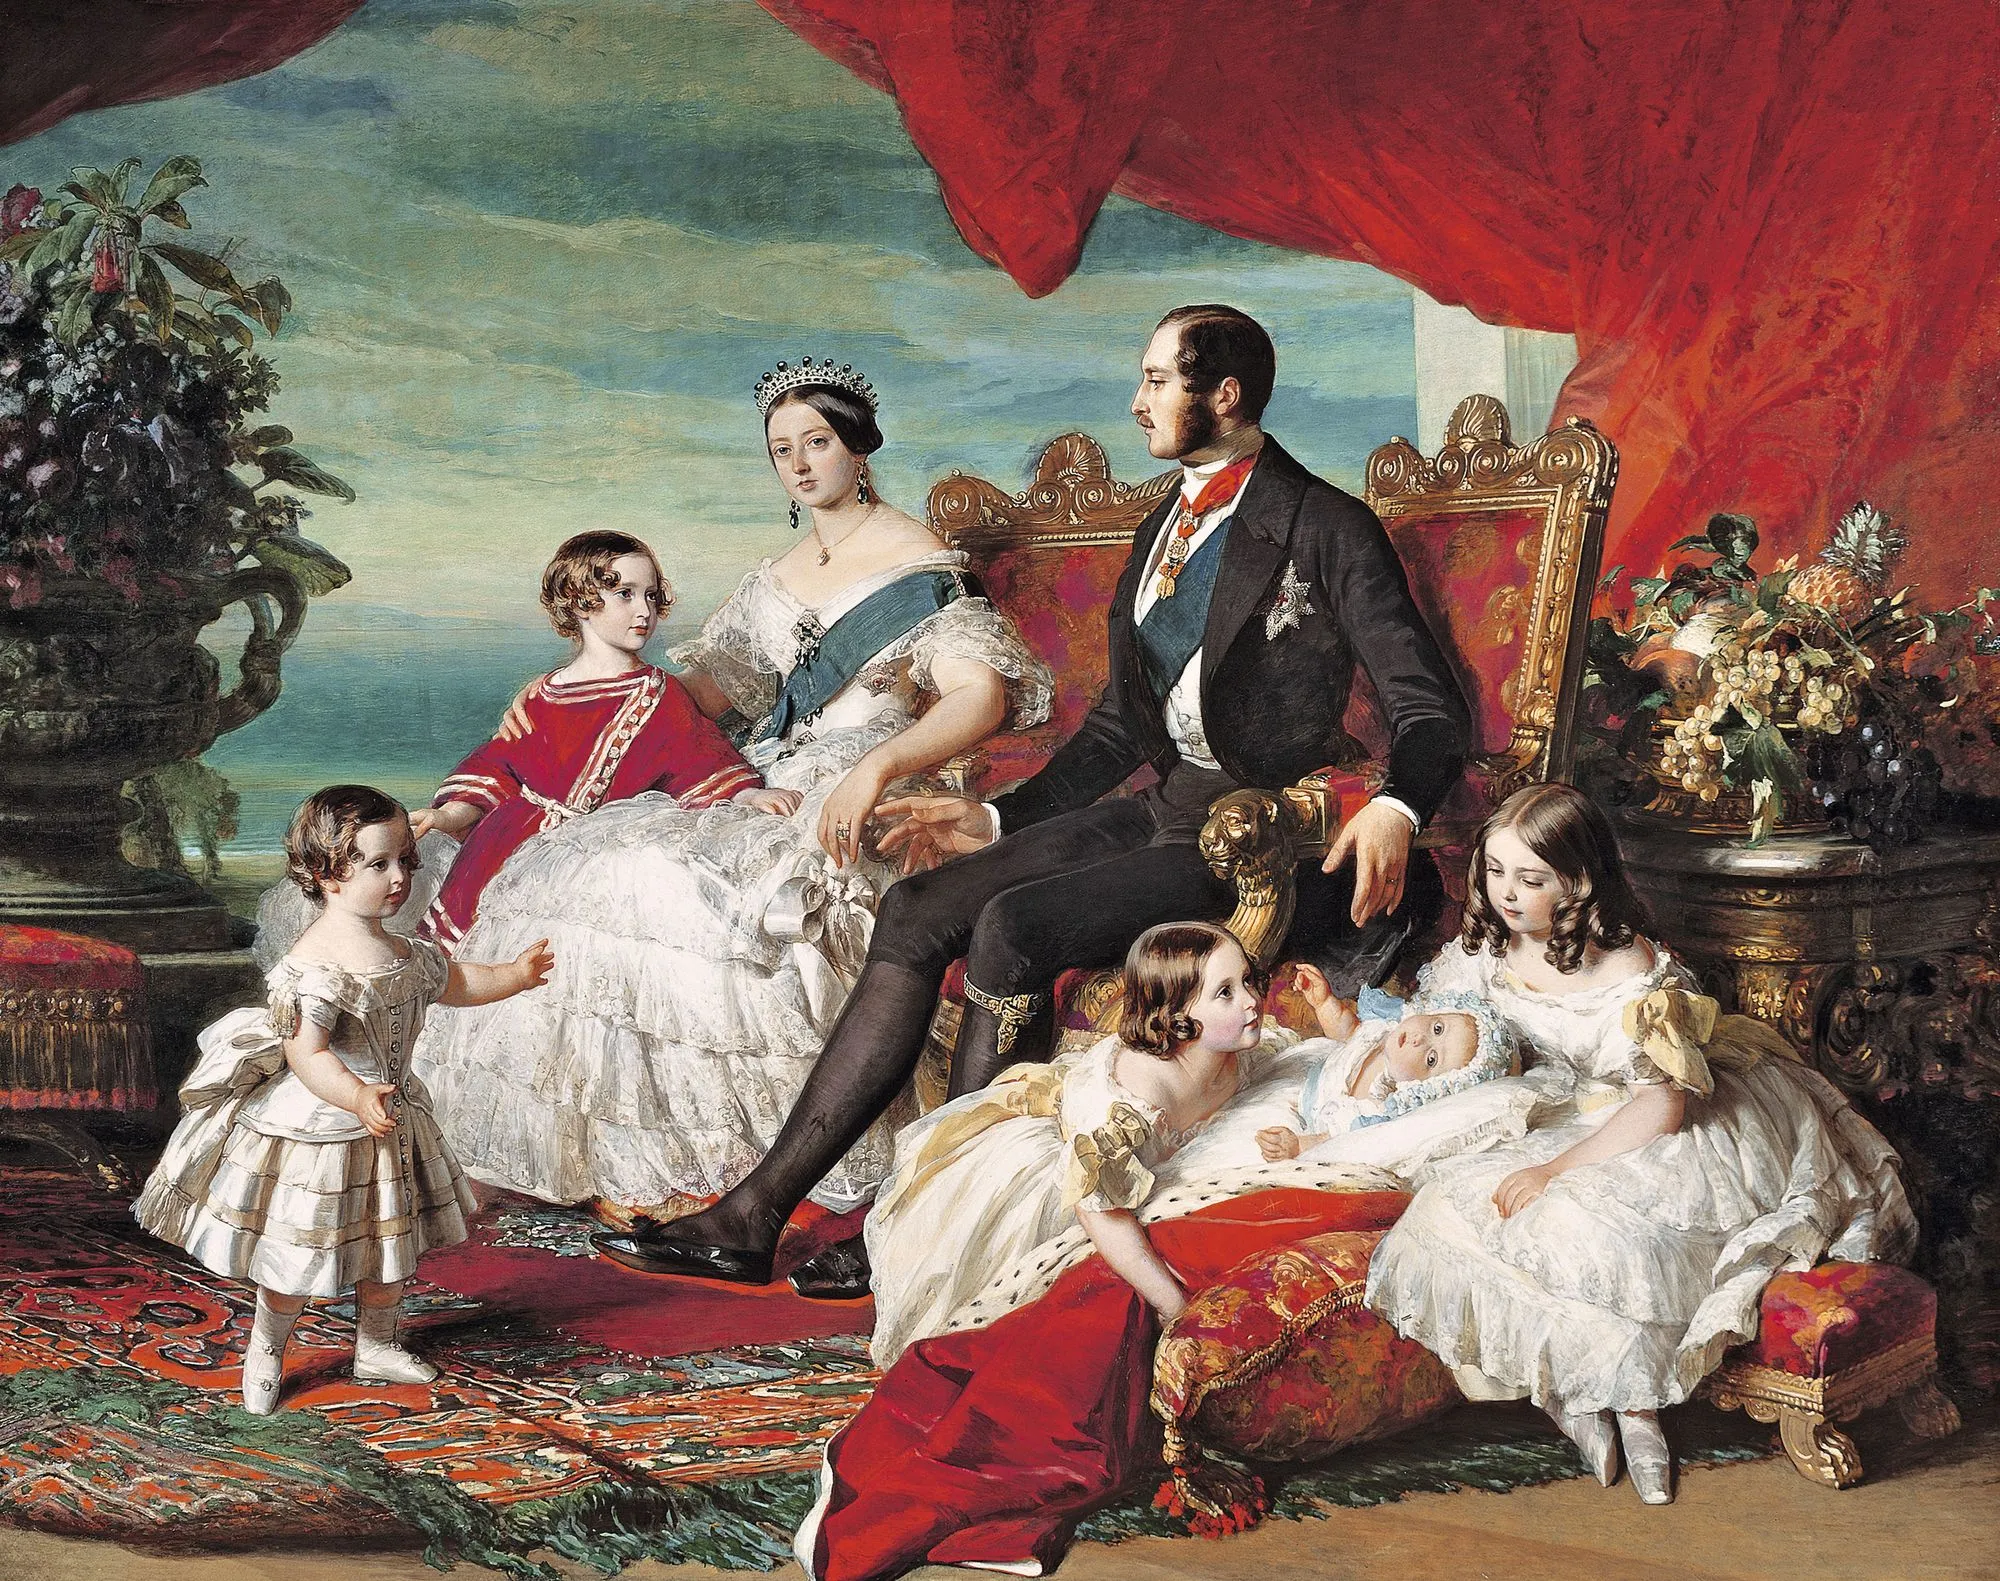 The Royal Family, Franz Xaver Winterhalter, 1846.